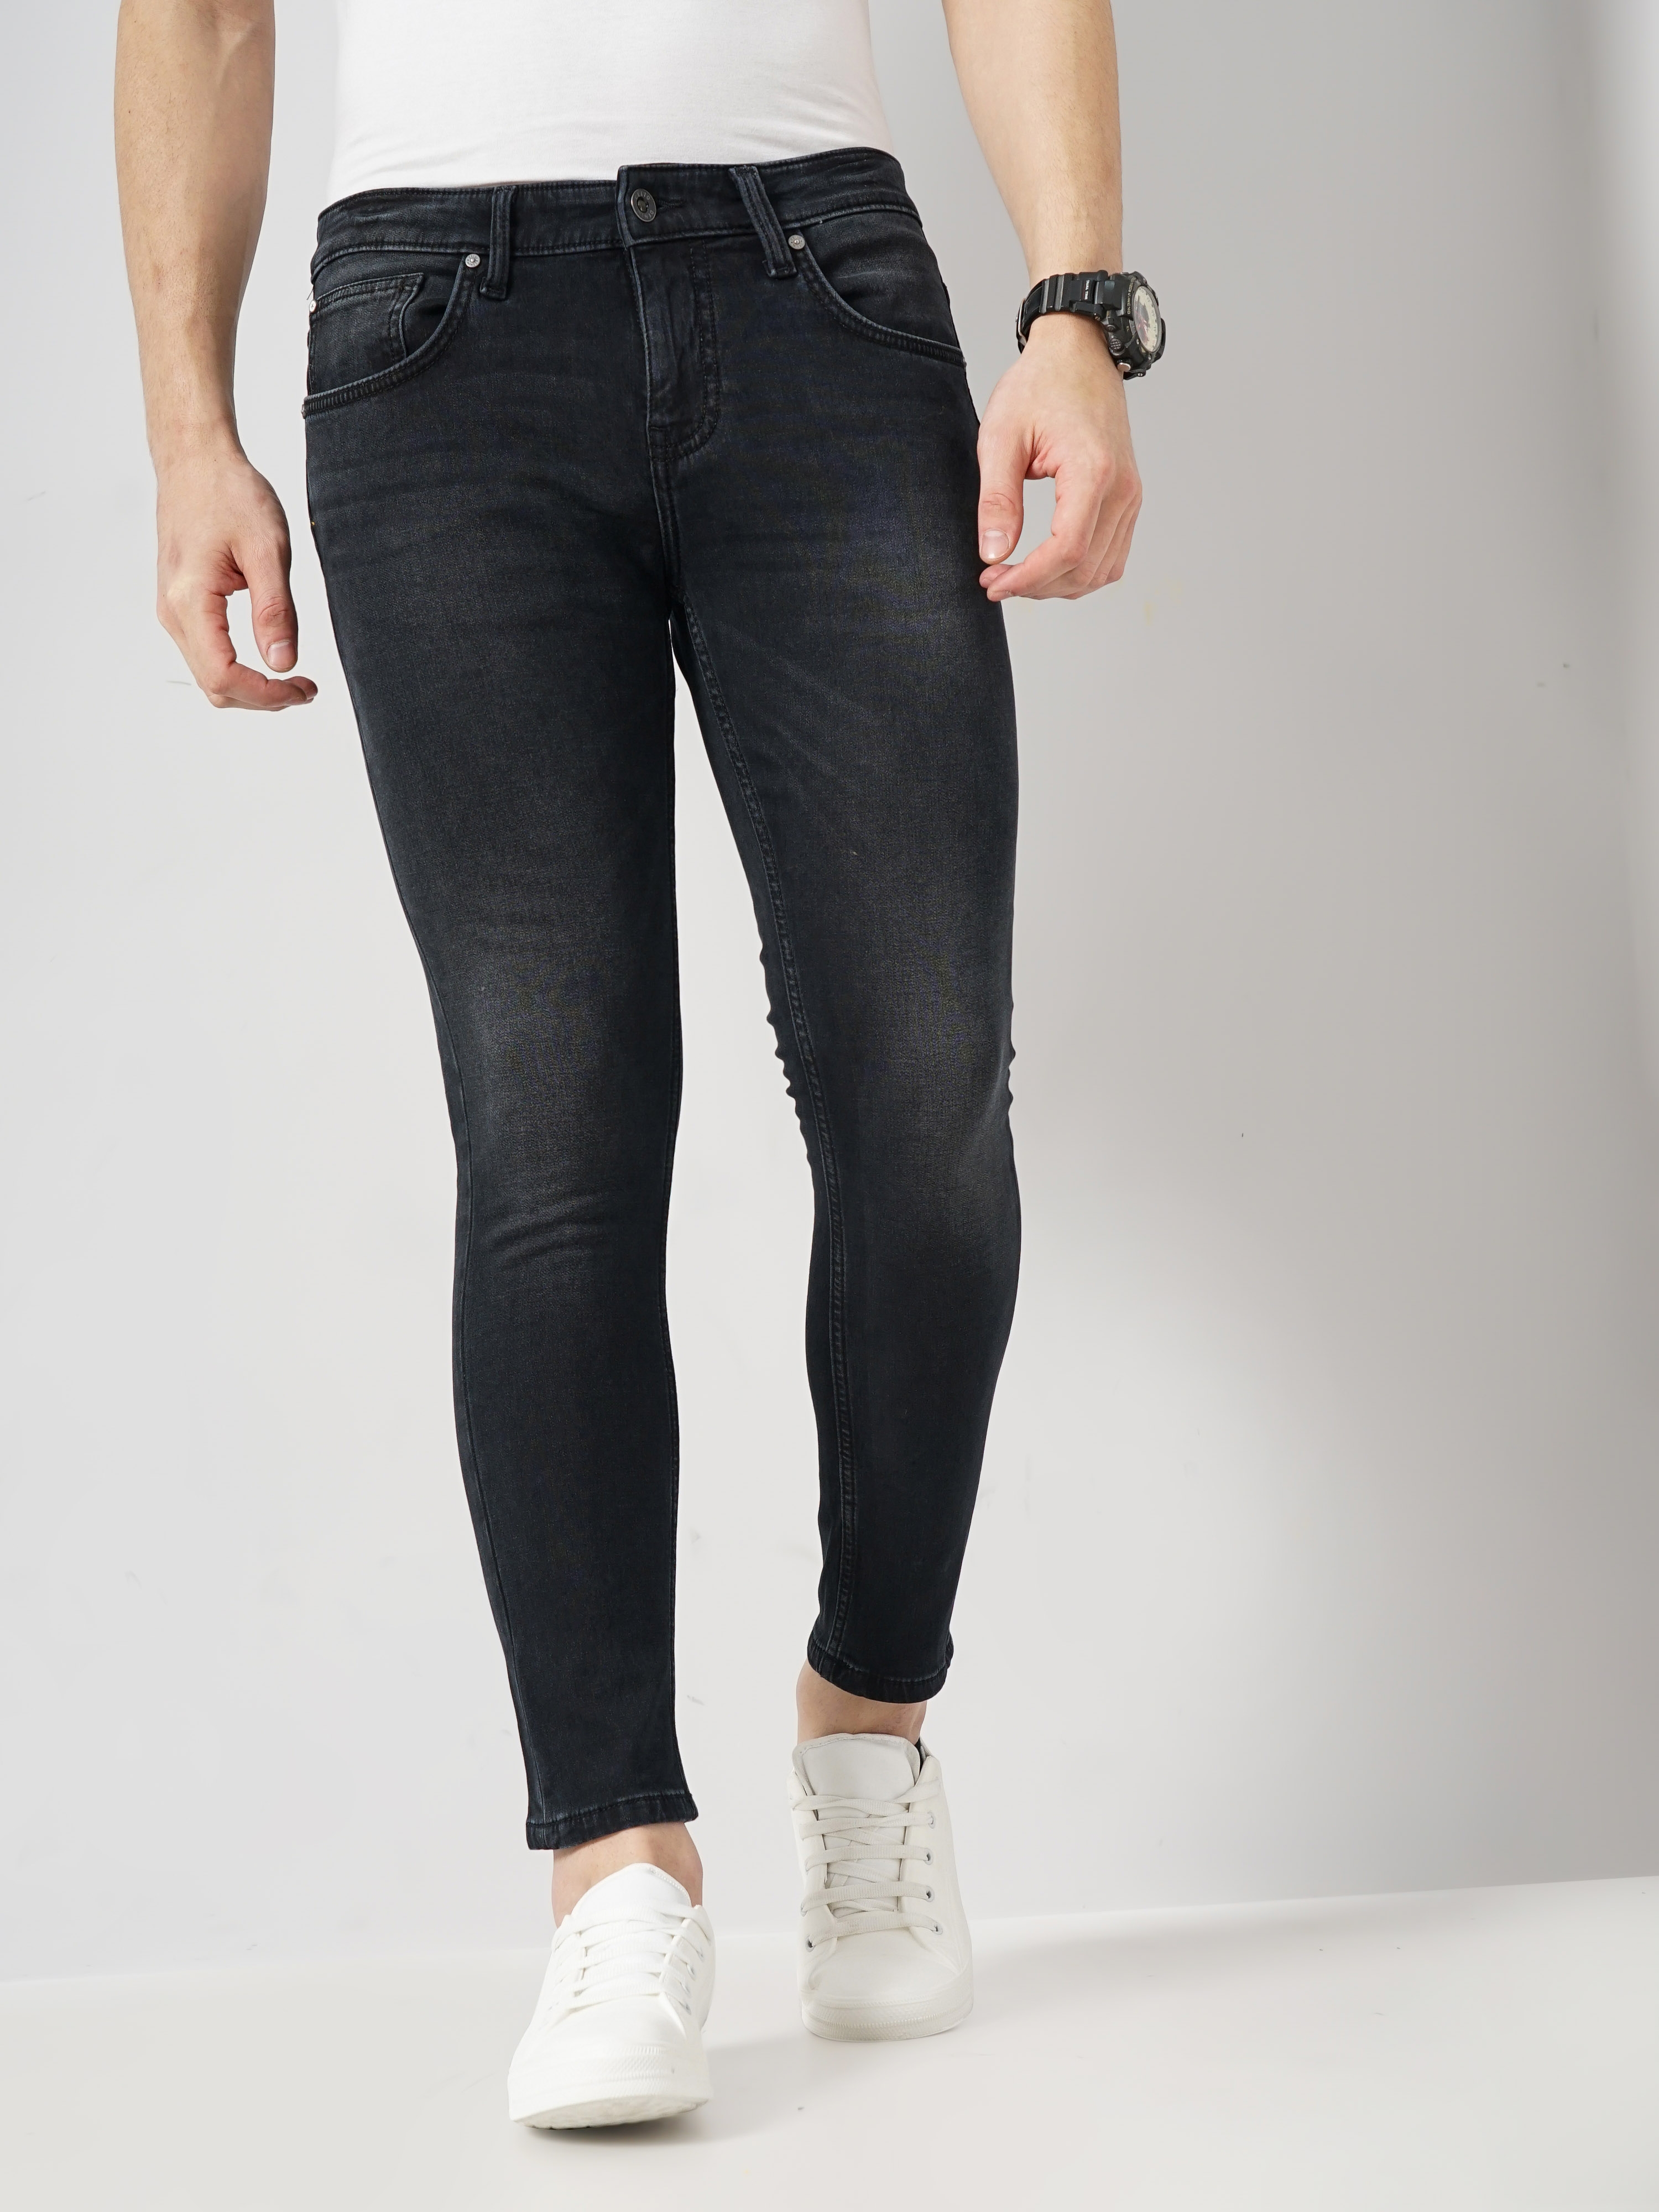 Celio Men's Solid Black Cotton Ankle Length Jeans